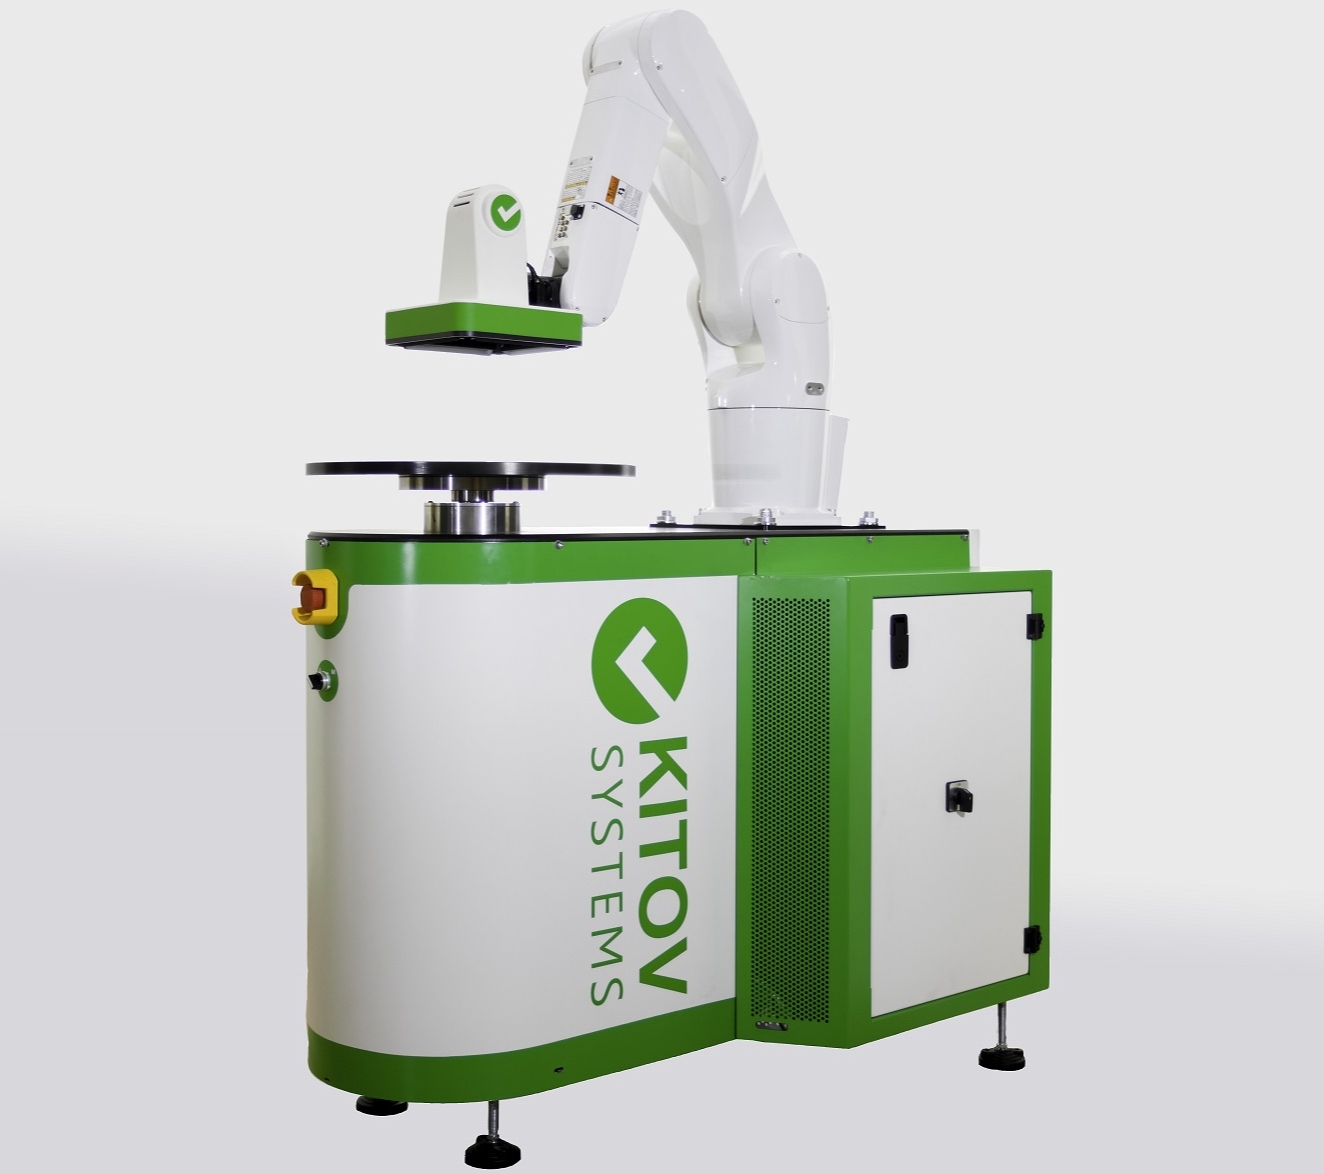 Qualitätssicherung von Kunststoffteilen mit dem hybriden Roboter-Visionsystem KITOV